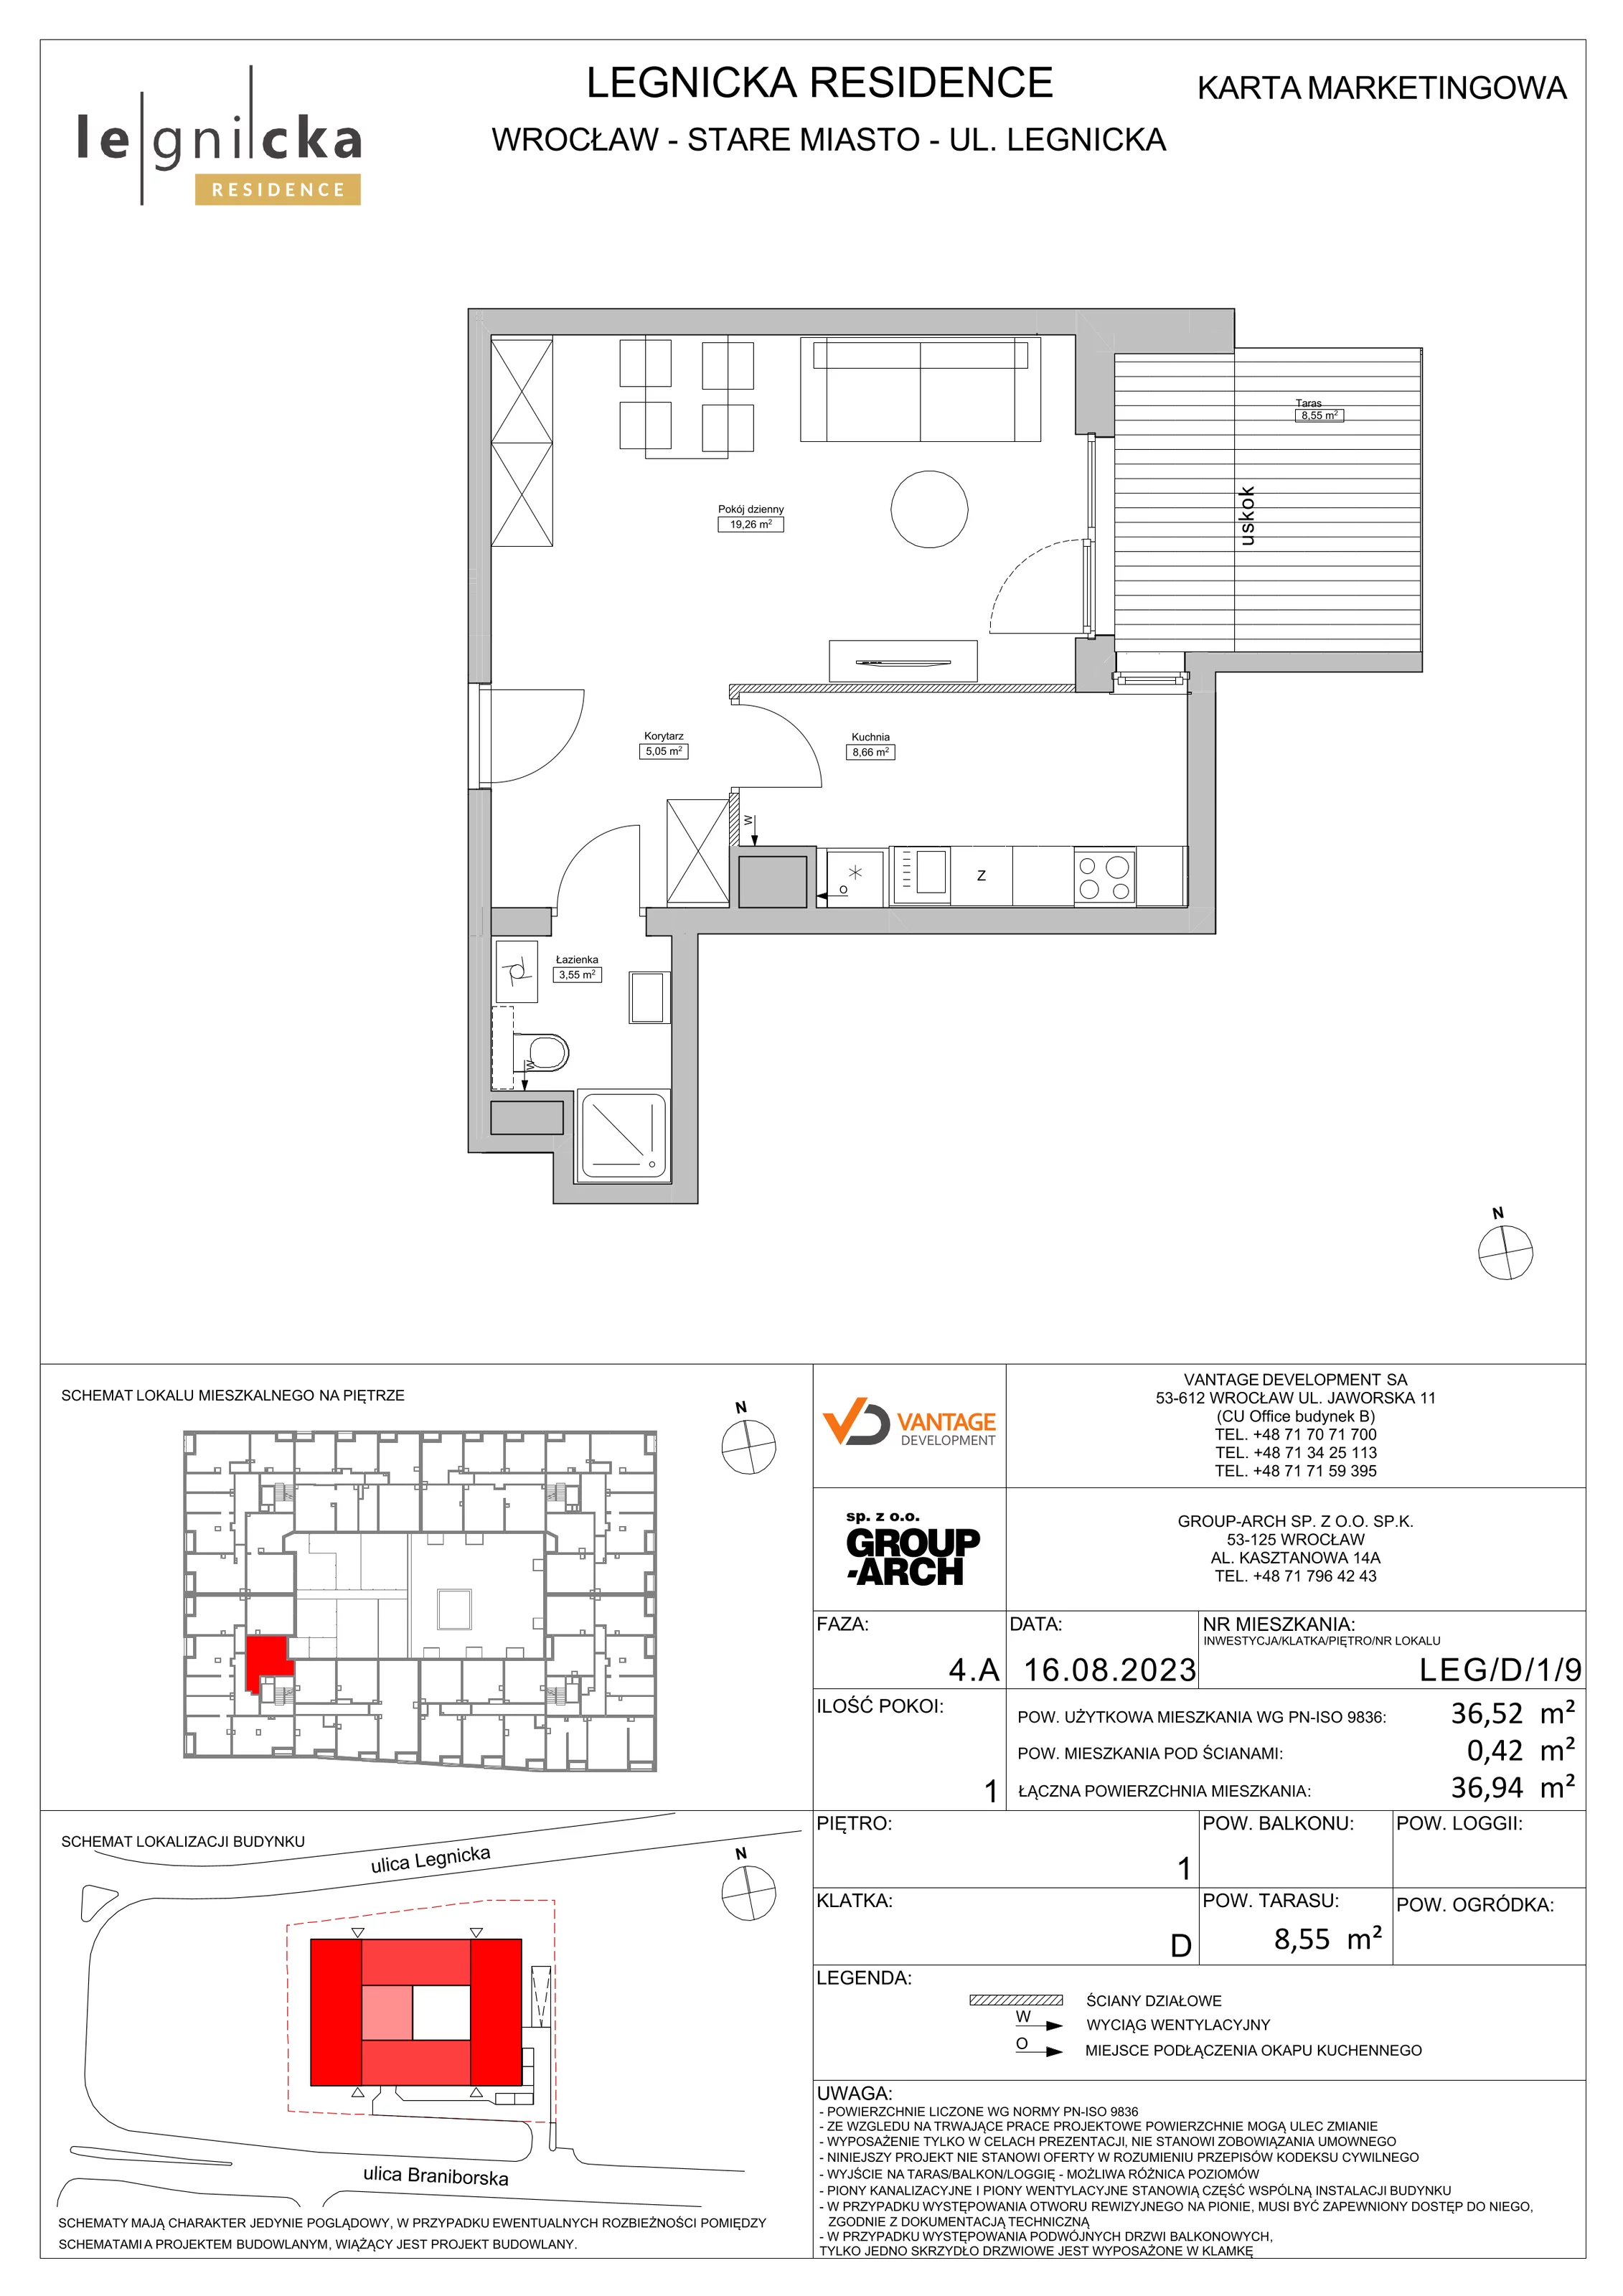 Apartament inwestycyjny 36,52 m², piętro 1, oferta nr LEG/D/1/9, Legnicka Residence, Wrocław, Szczepin, ul. Legnicka 36